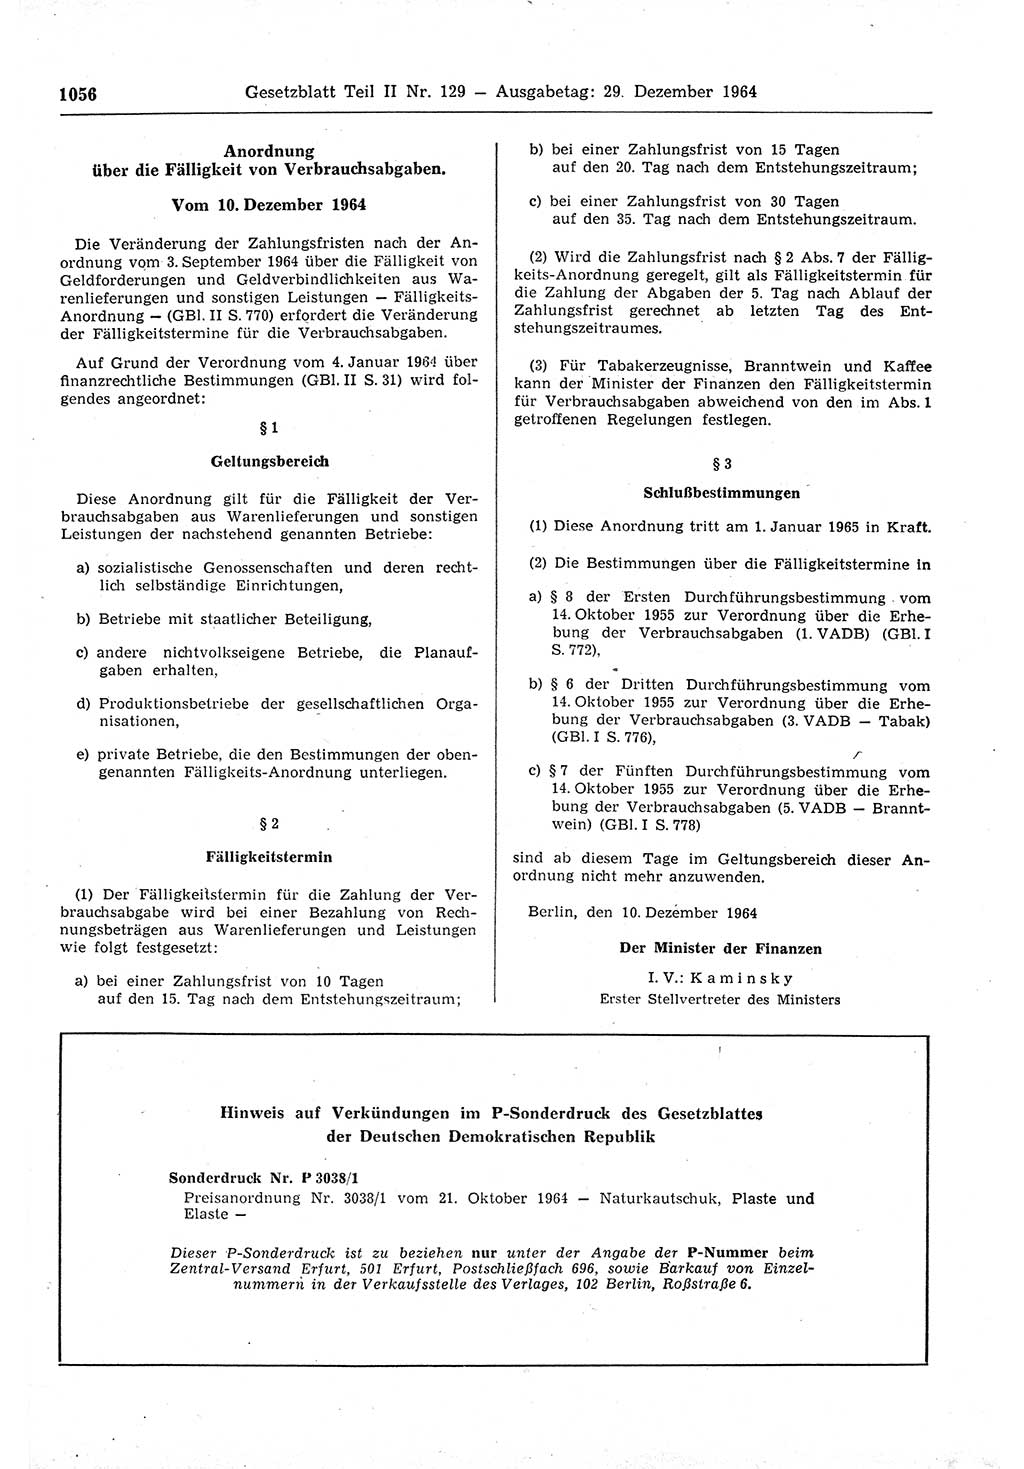 Gesetzblatt (GBl.) der Deutschen Demokratischen Republik (DDR) Teil ⅠⅠ 1964, Seite 1056 (GBl. DDR ⅠⅠ 1964, S. 1056)